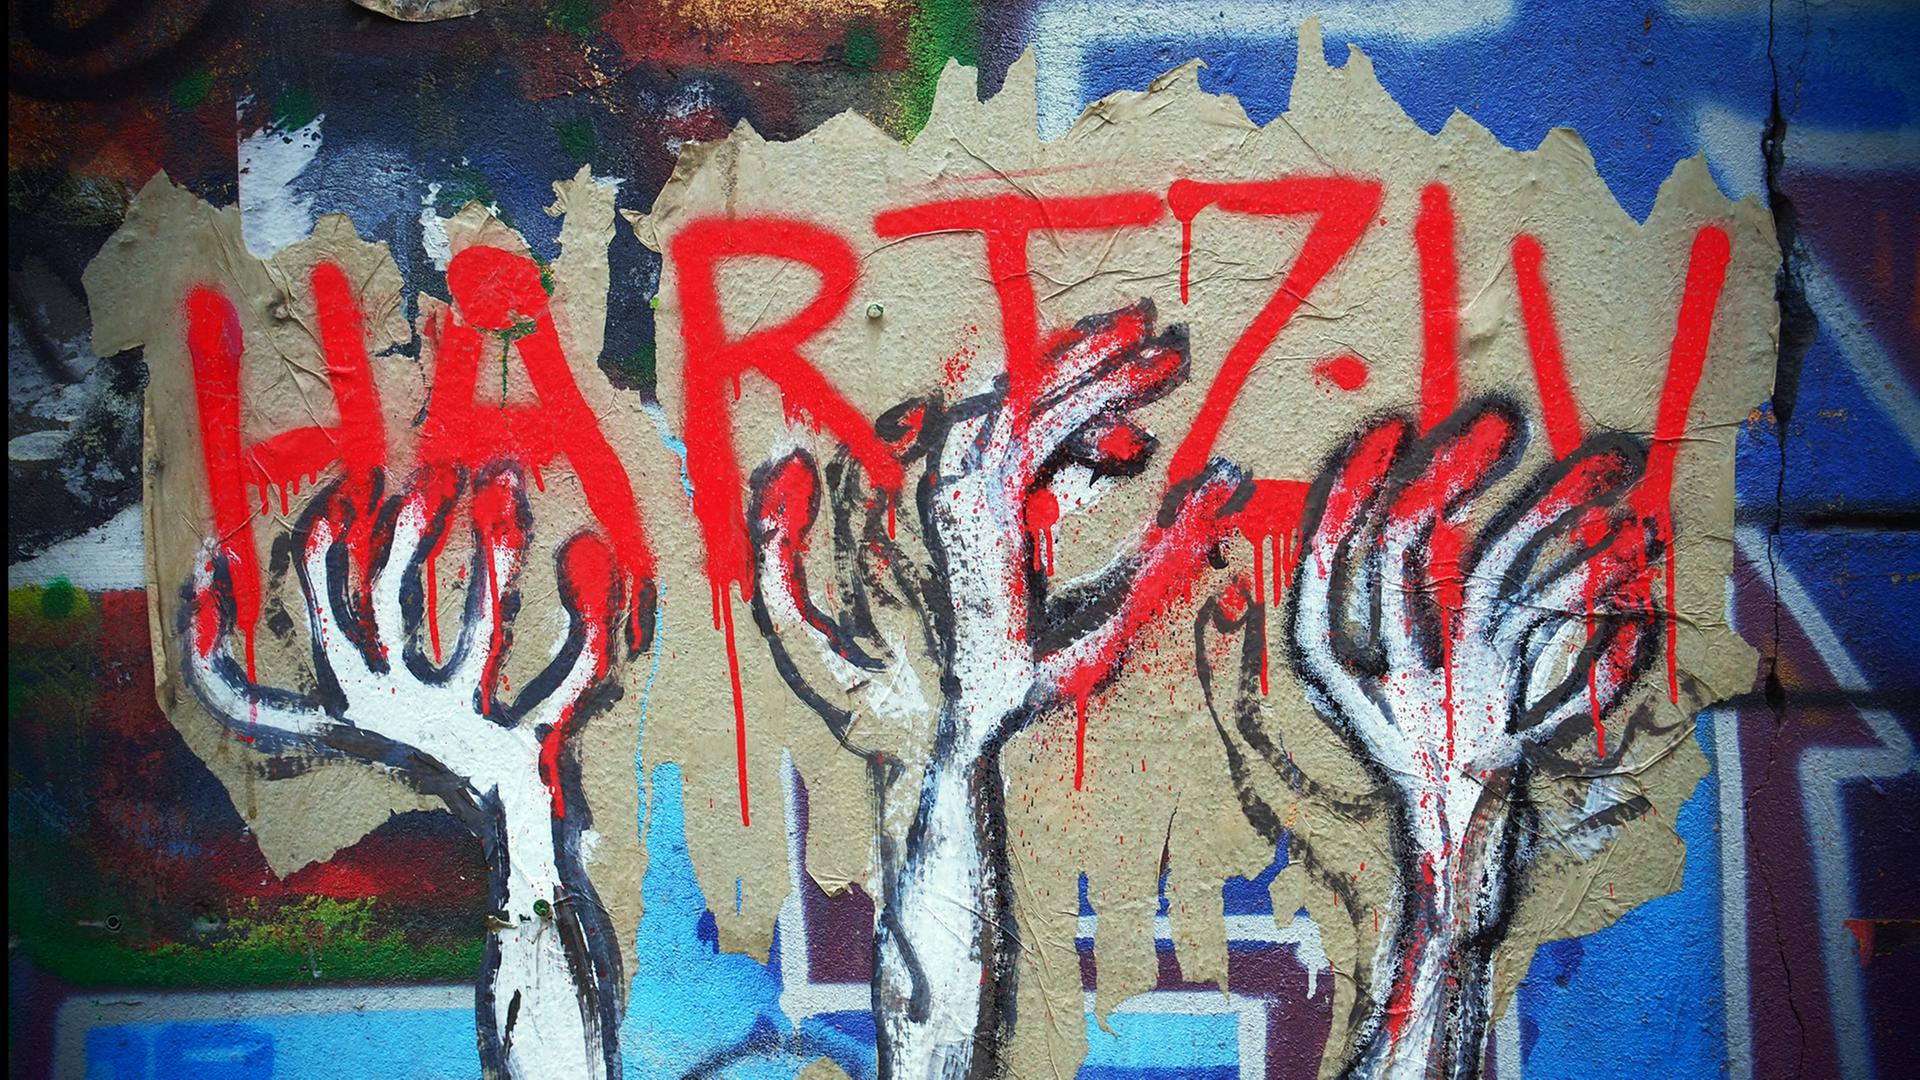 Hartz IV als Graffiti in roter Schrift, nach der dünne, zittrige Hände greifen